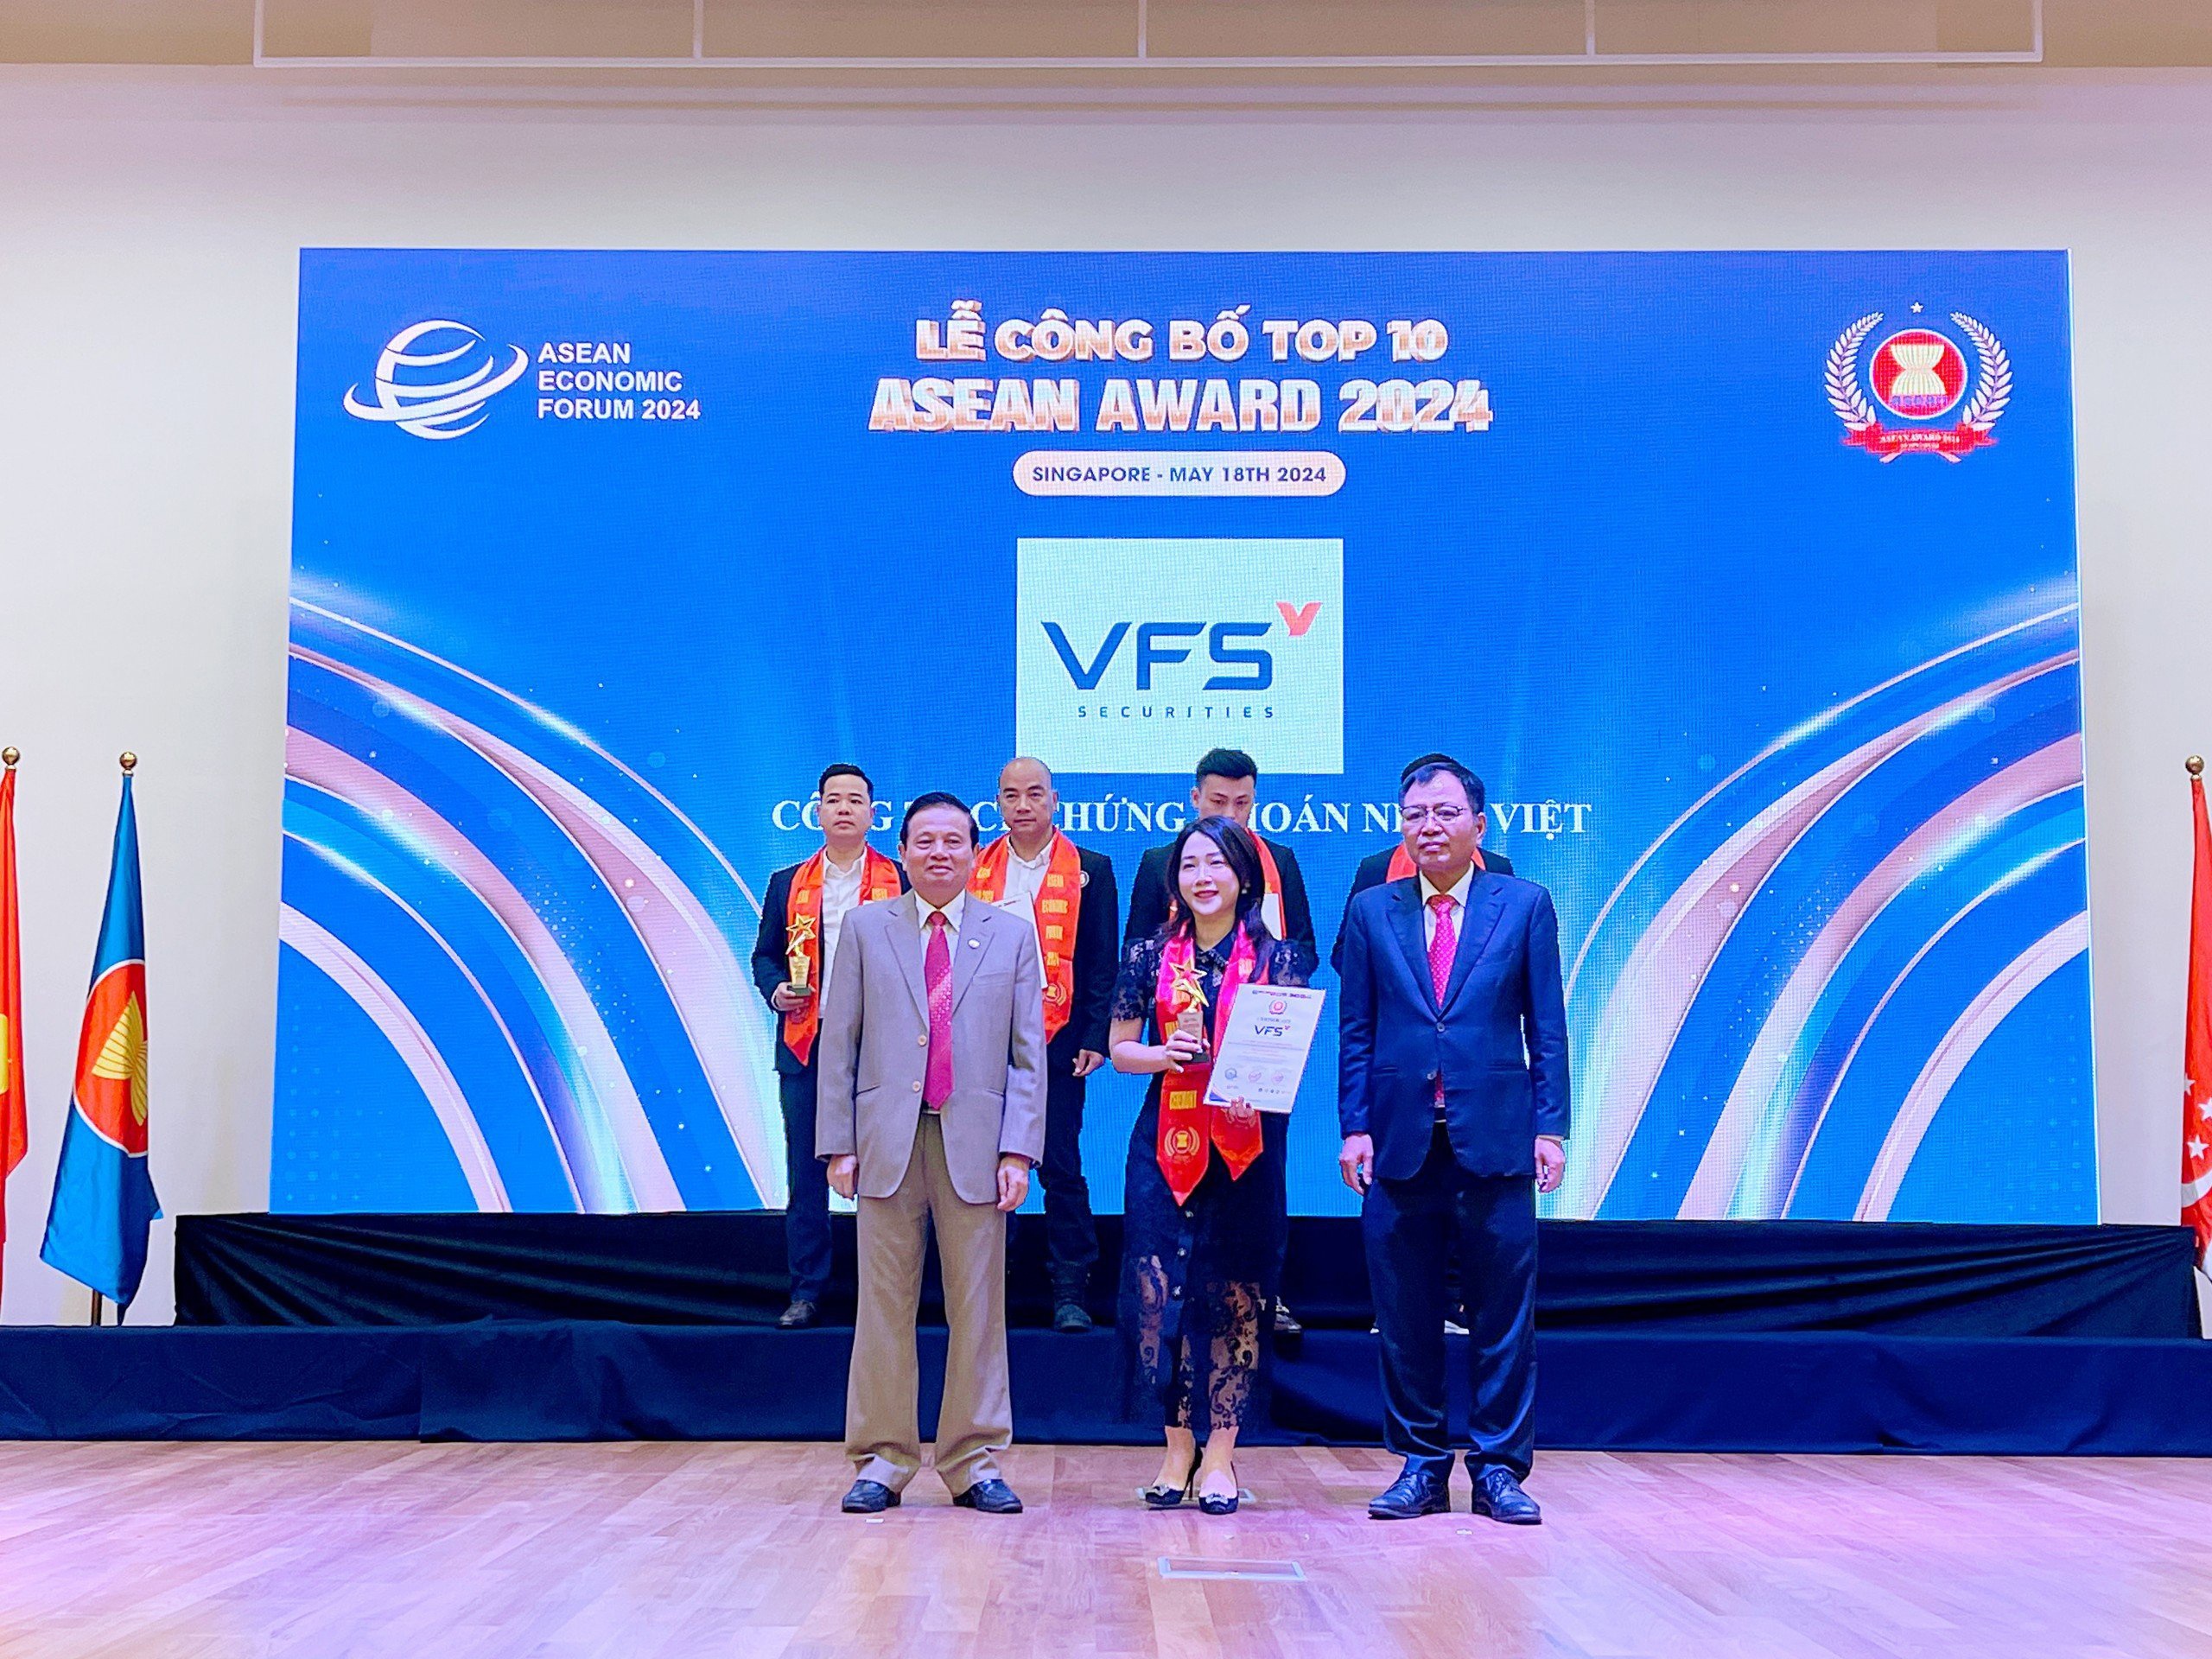 Bà Nguyễn Thị Thu Hằng - Phó Tổng Giám đốc VFS nhận giải thưởng TOP 10 ASEAN AWARD 2024 với hạng mục “Doanh nghiệp tiêu biểu”